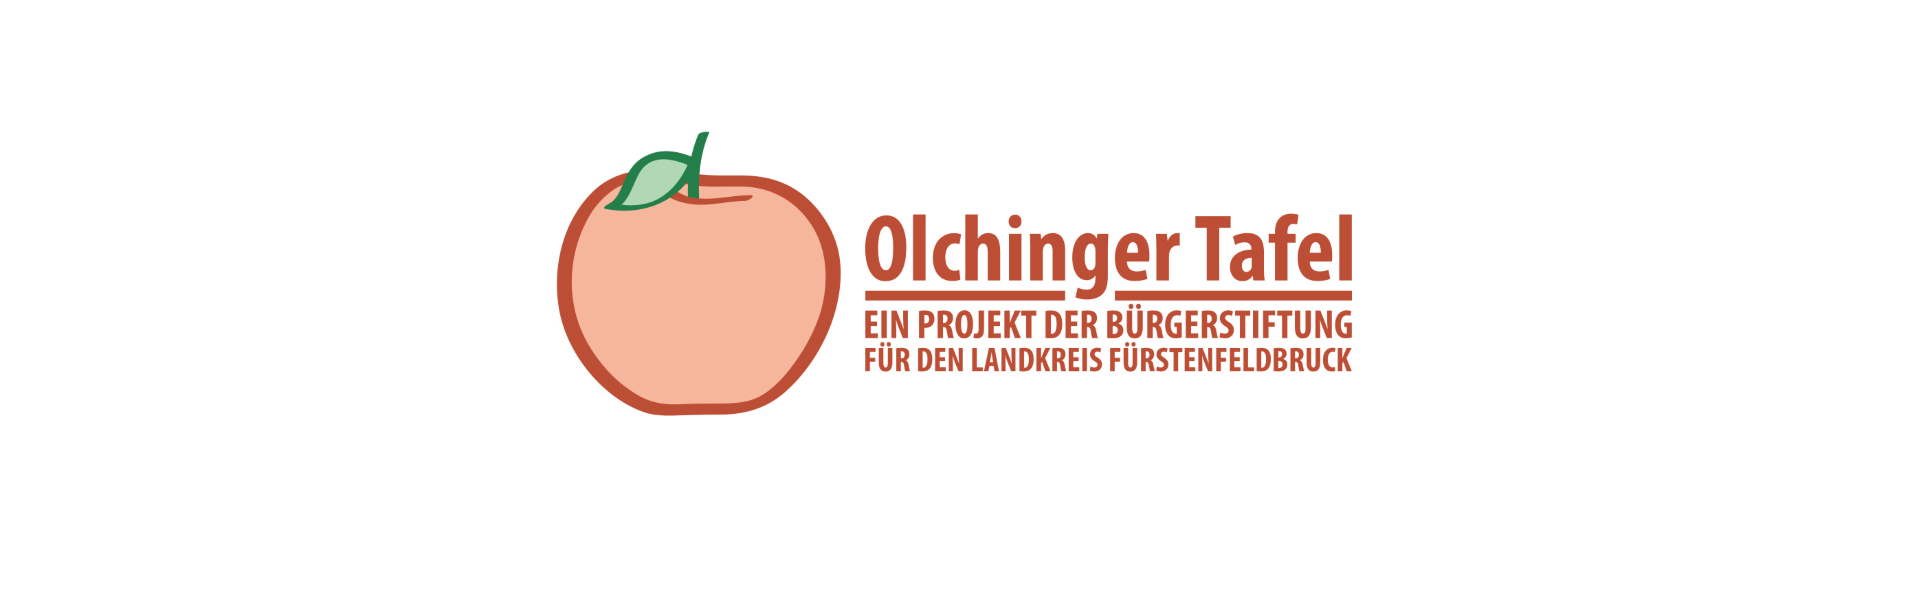 Featured image for “Schüler sammeln für Olchinger Tafel”